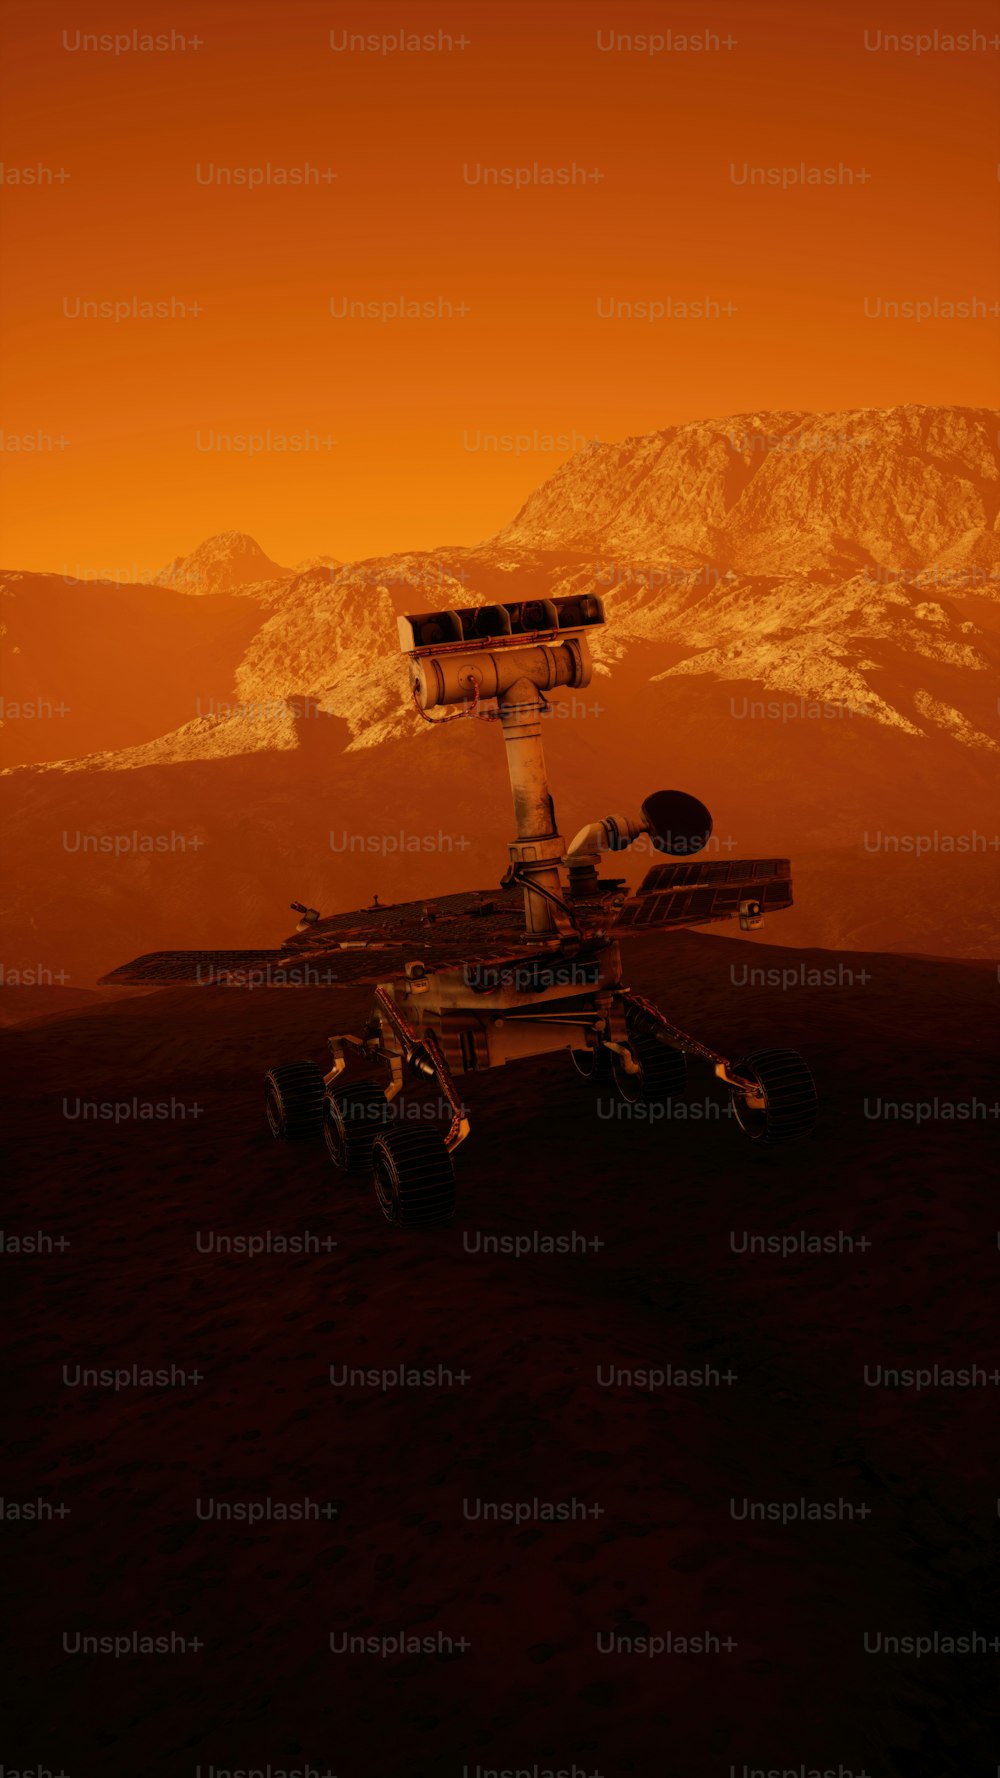 Uma imagem gerada por computador de uma estação espacial no deserto